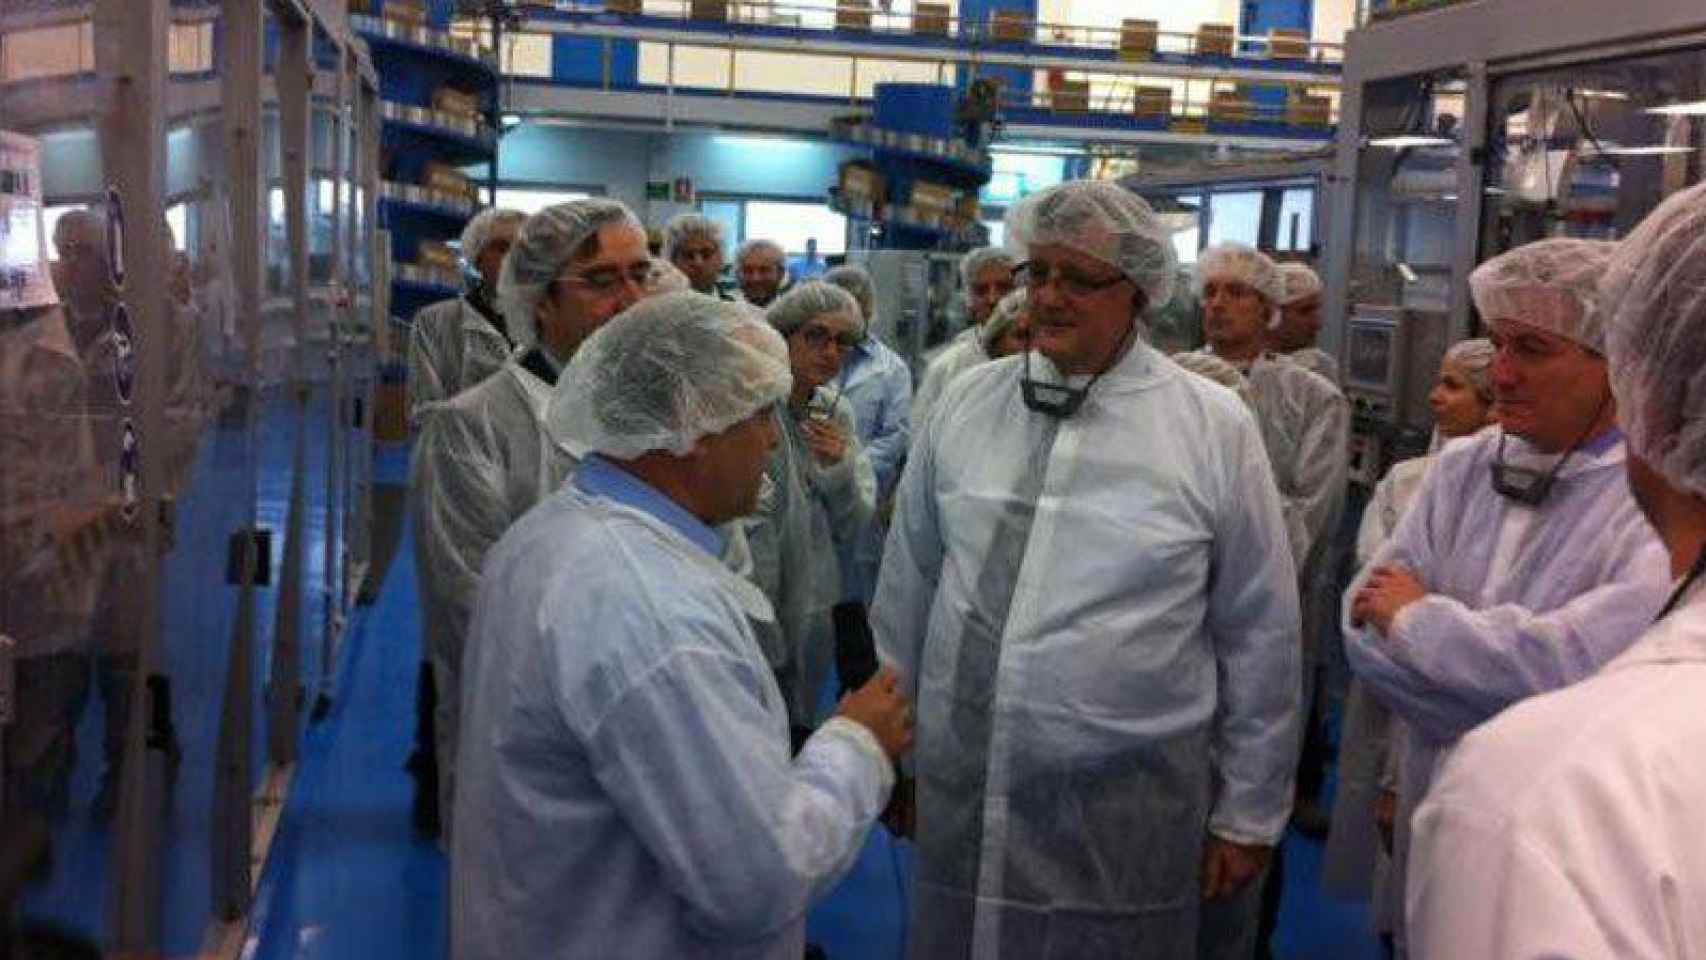 Imagen de la factoría de Procter & Gamble en Mataró durante una visita con el ex consejero de Industria catalán, Xavier Mena.